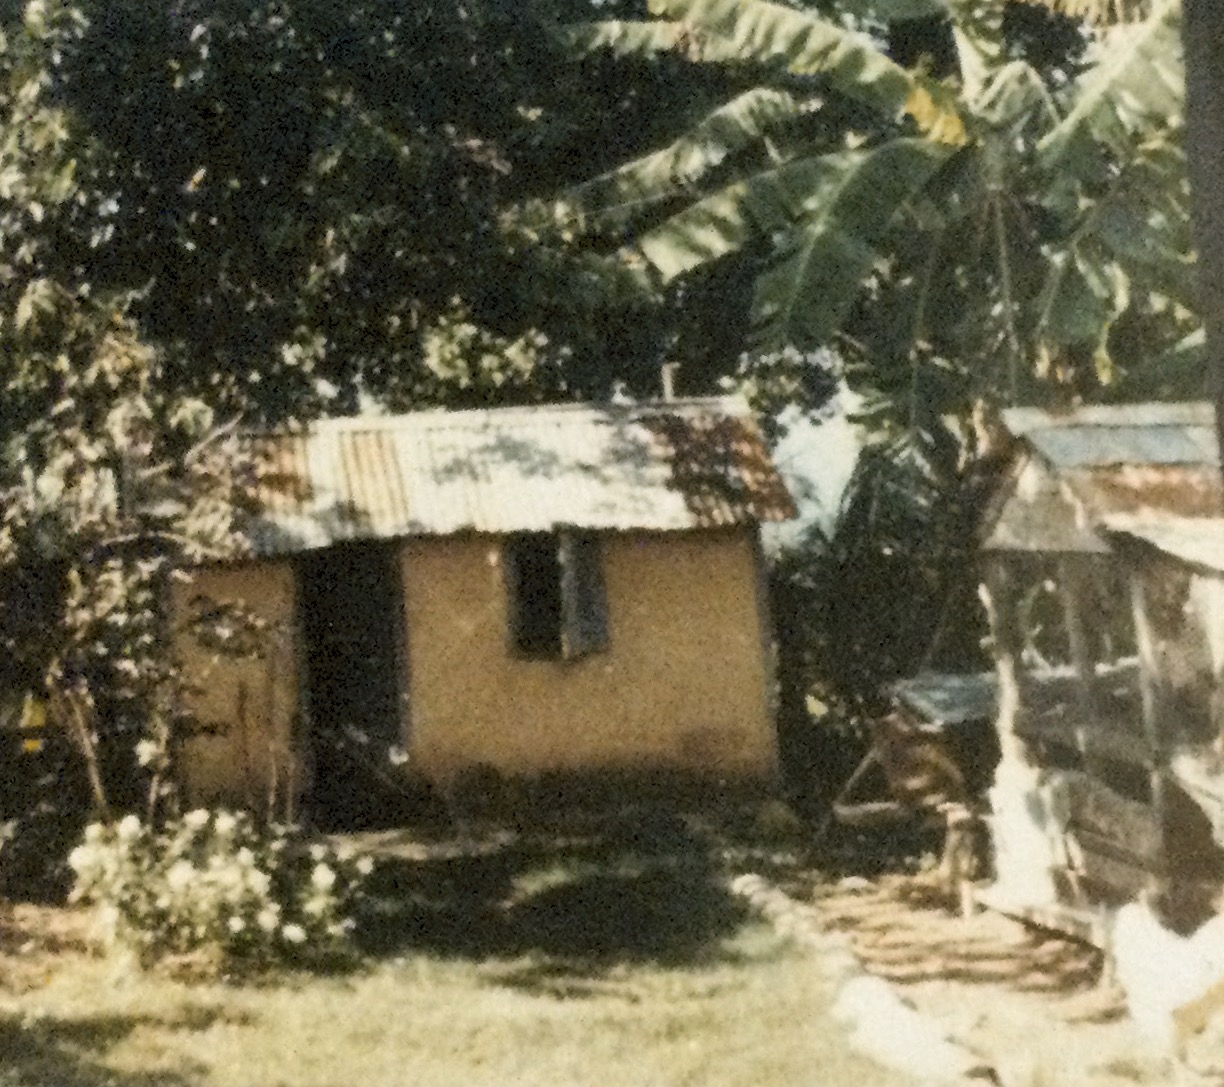 Outhouse circa 1900